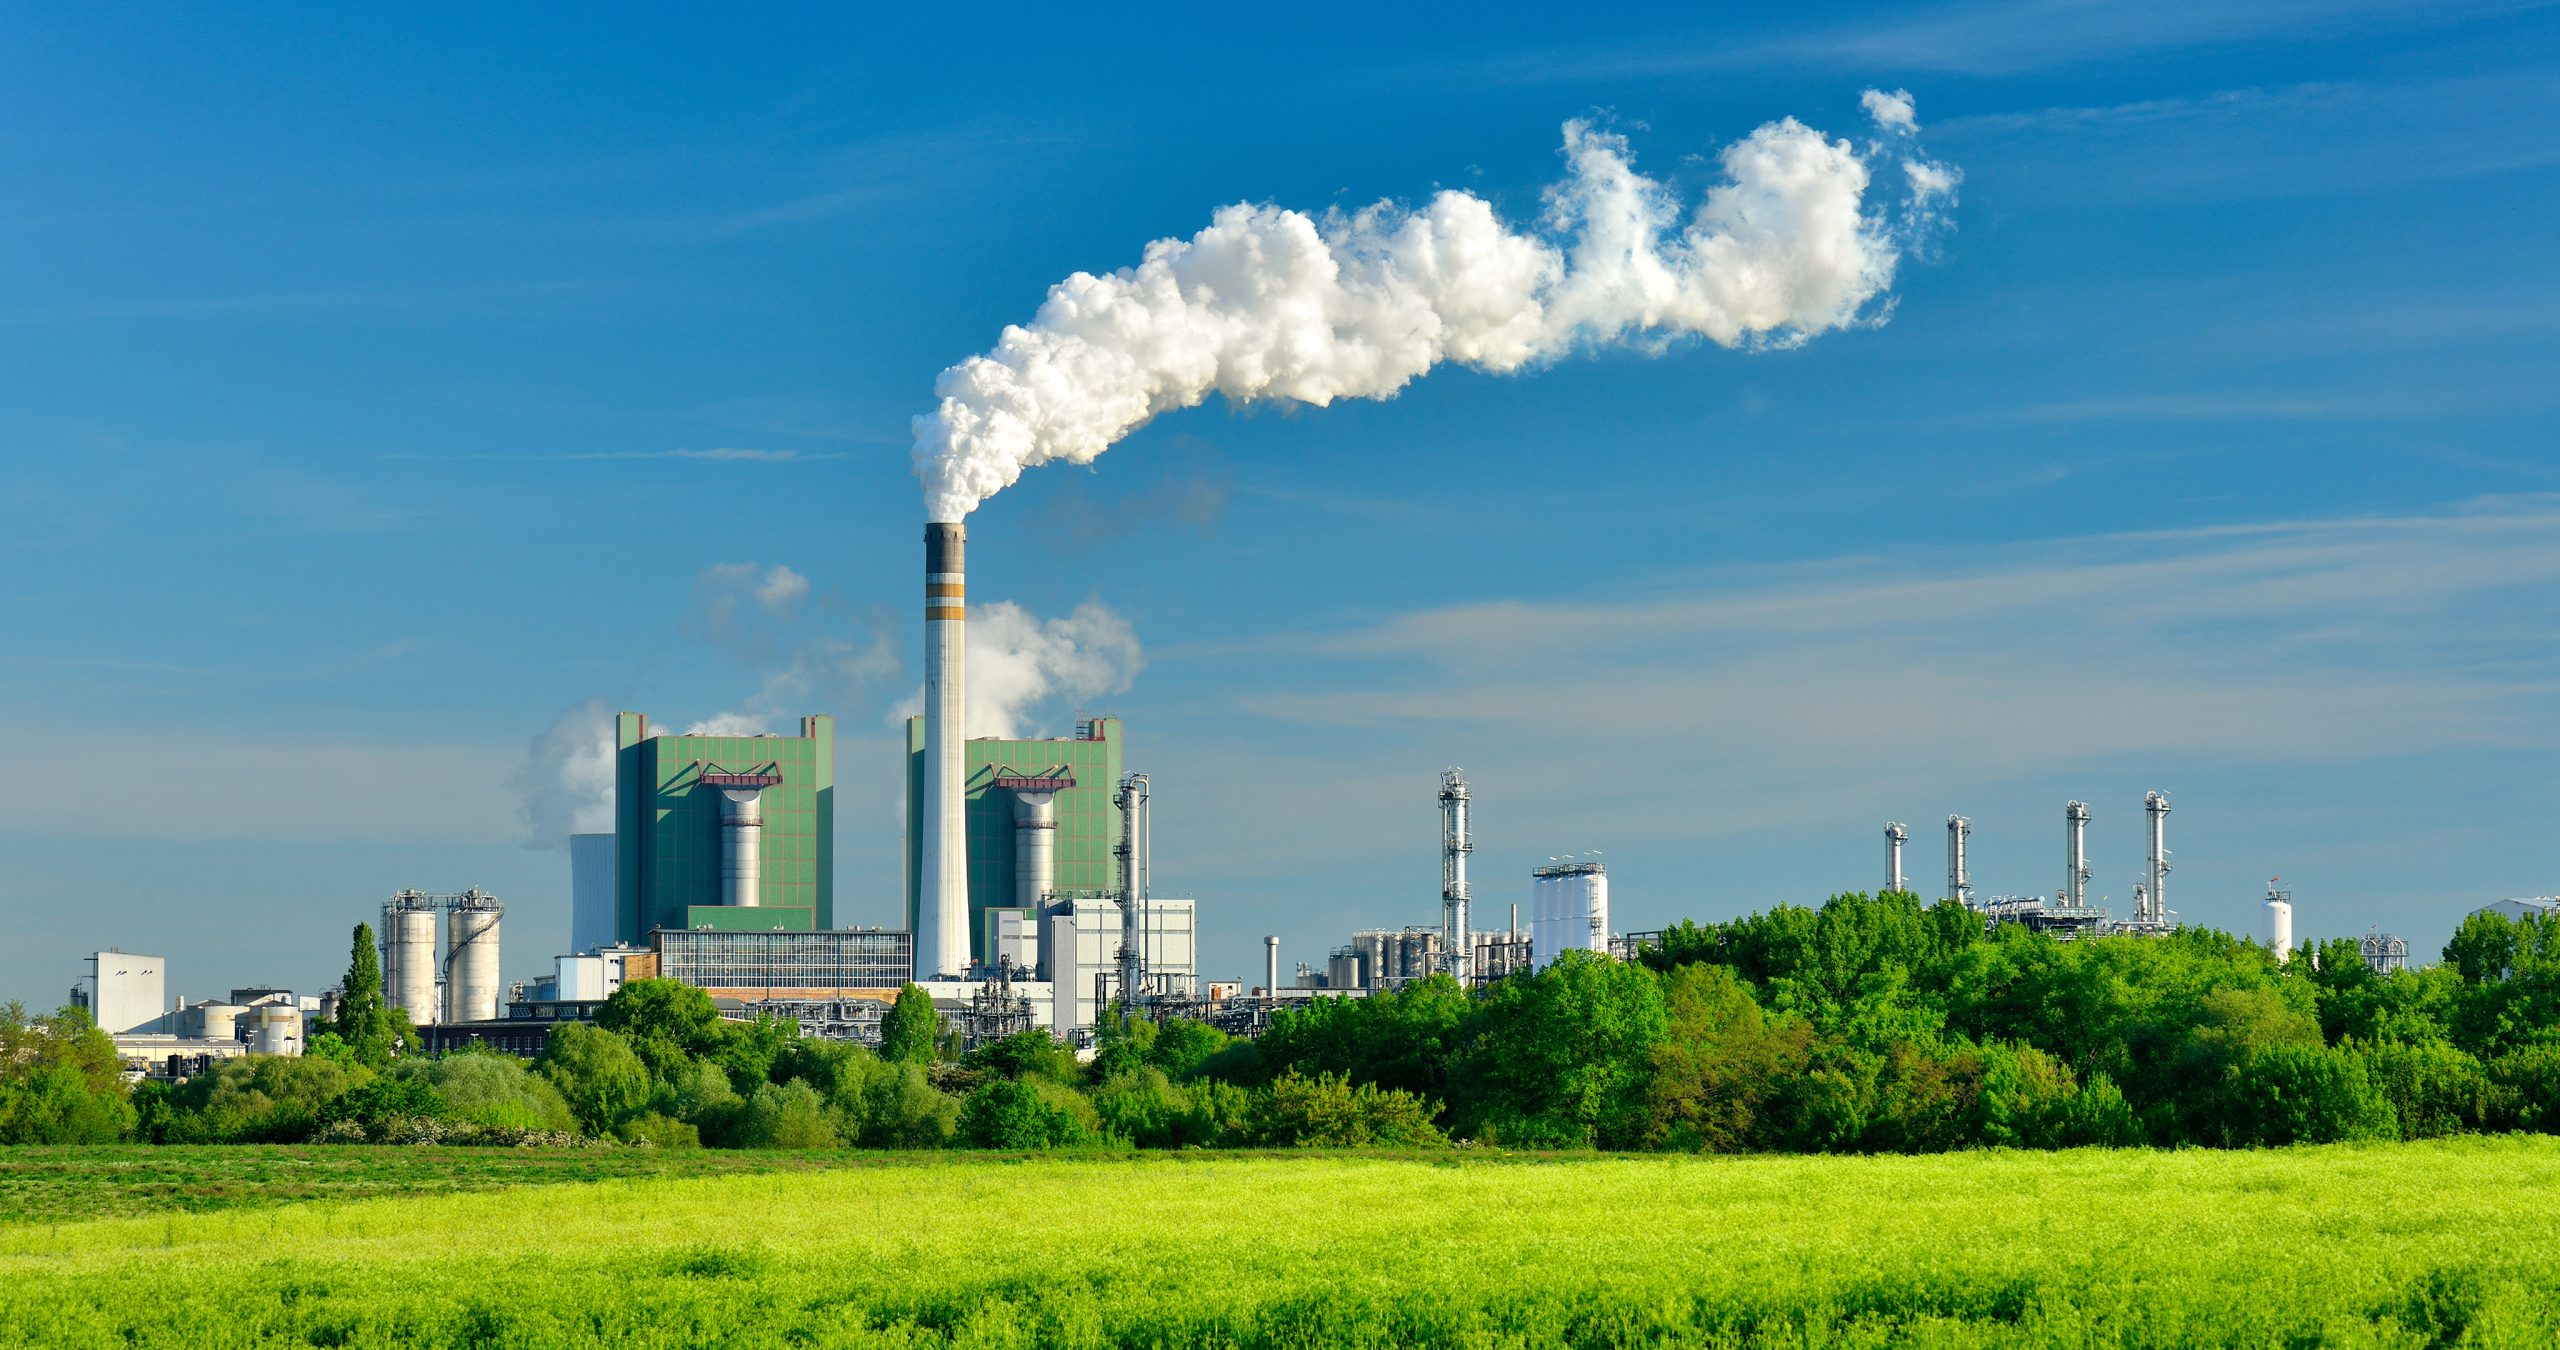 Giá tín chỉ carbon có mức dao động lớn, đặc biệt với các ngành phát thải mạnh như ngành nhựa